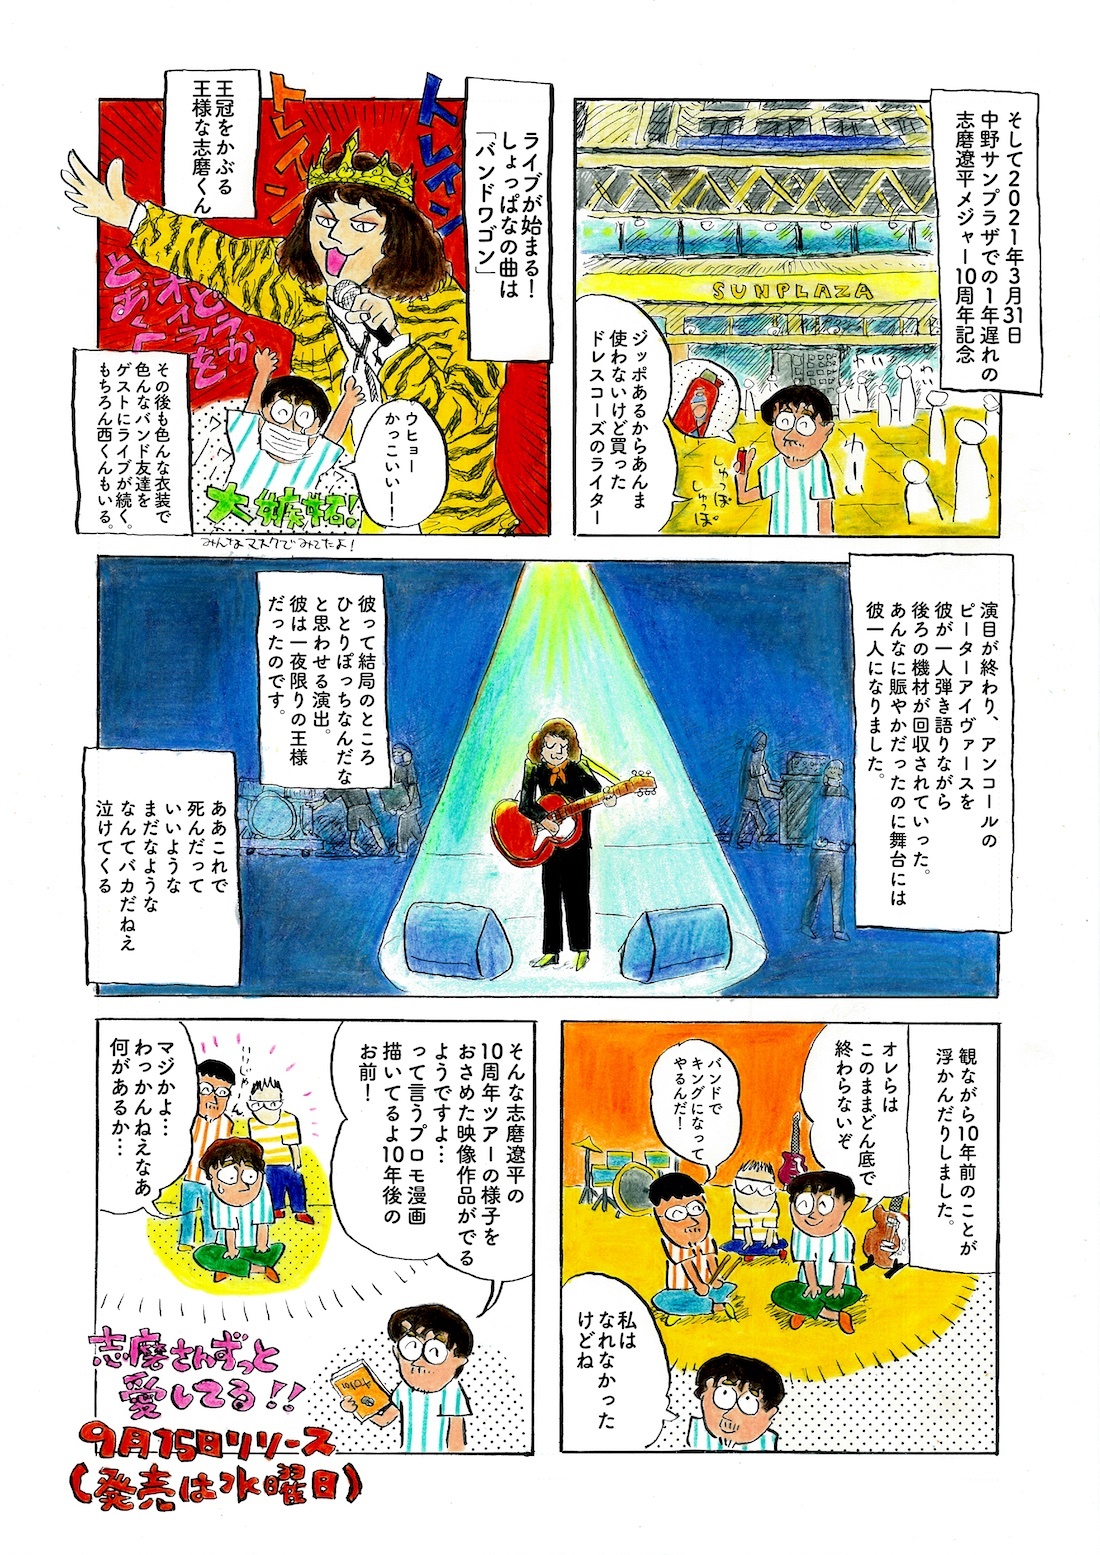 ドレスコーズ 志磨遼平 作家 パピヨン本田とのコラボ漫画を公開 コメントあり Spice エンタメ特化型情報メディア スパイス